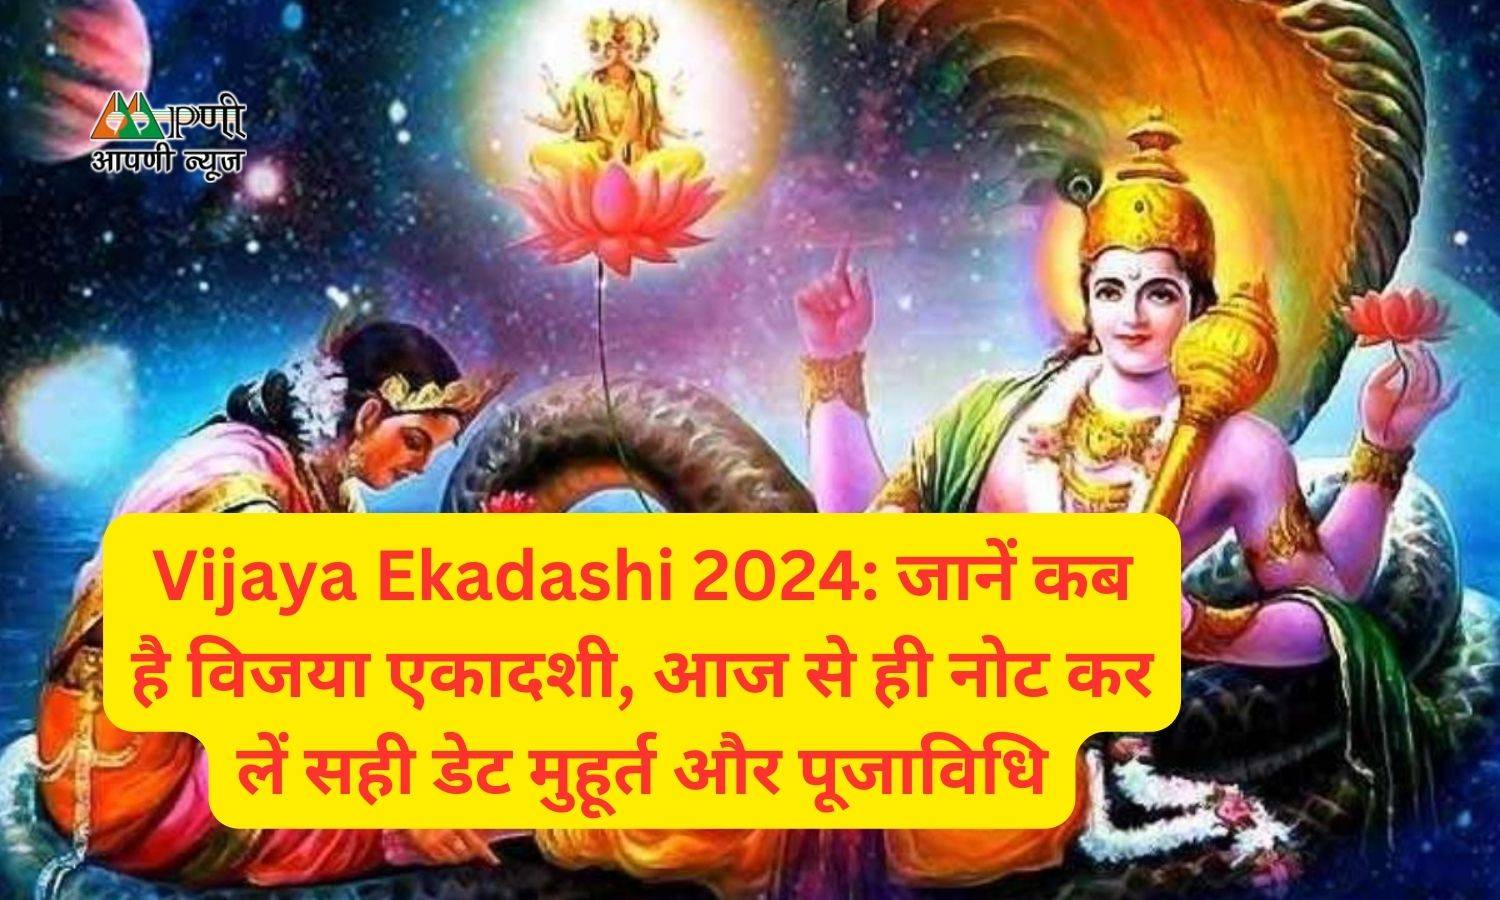 Vijaya Ekadashi 2024: जानें कब है विजया एकादशी, आज से ही नोट कर लें सही डेट मुहूर्त और पूजाविधि